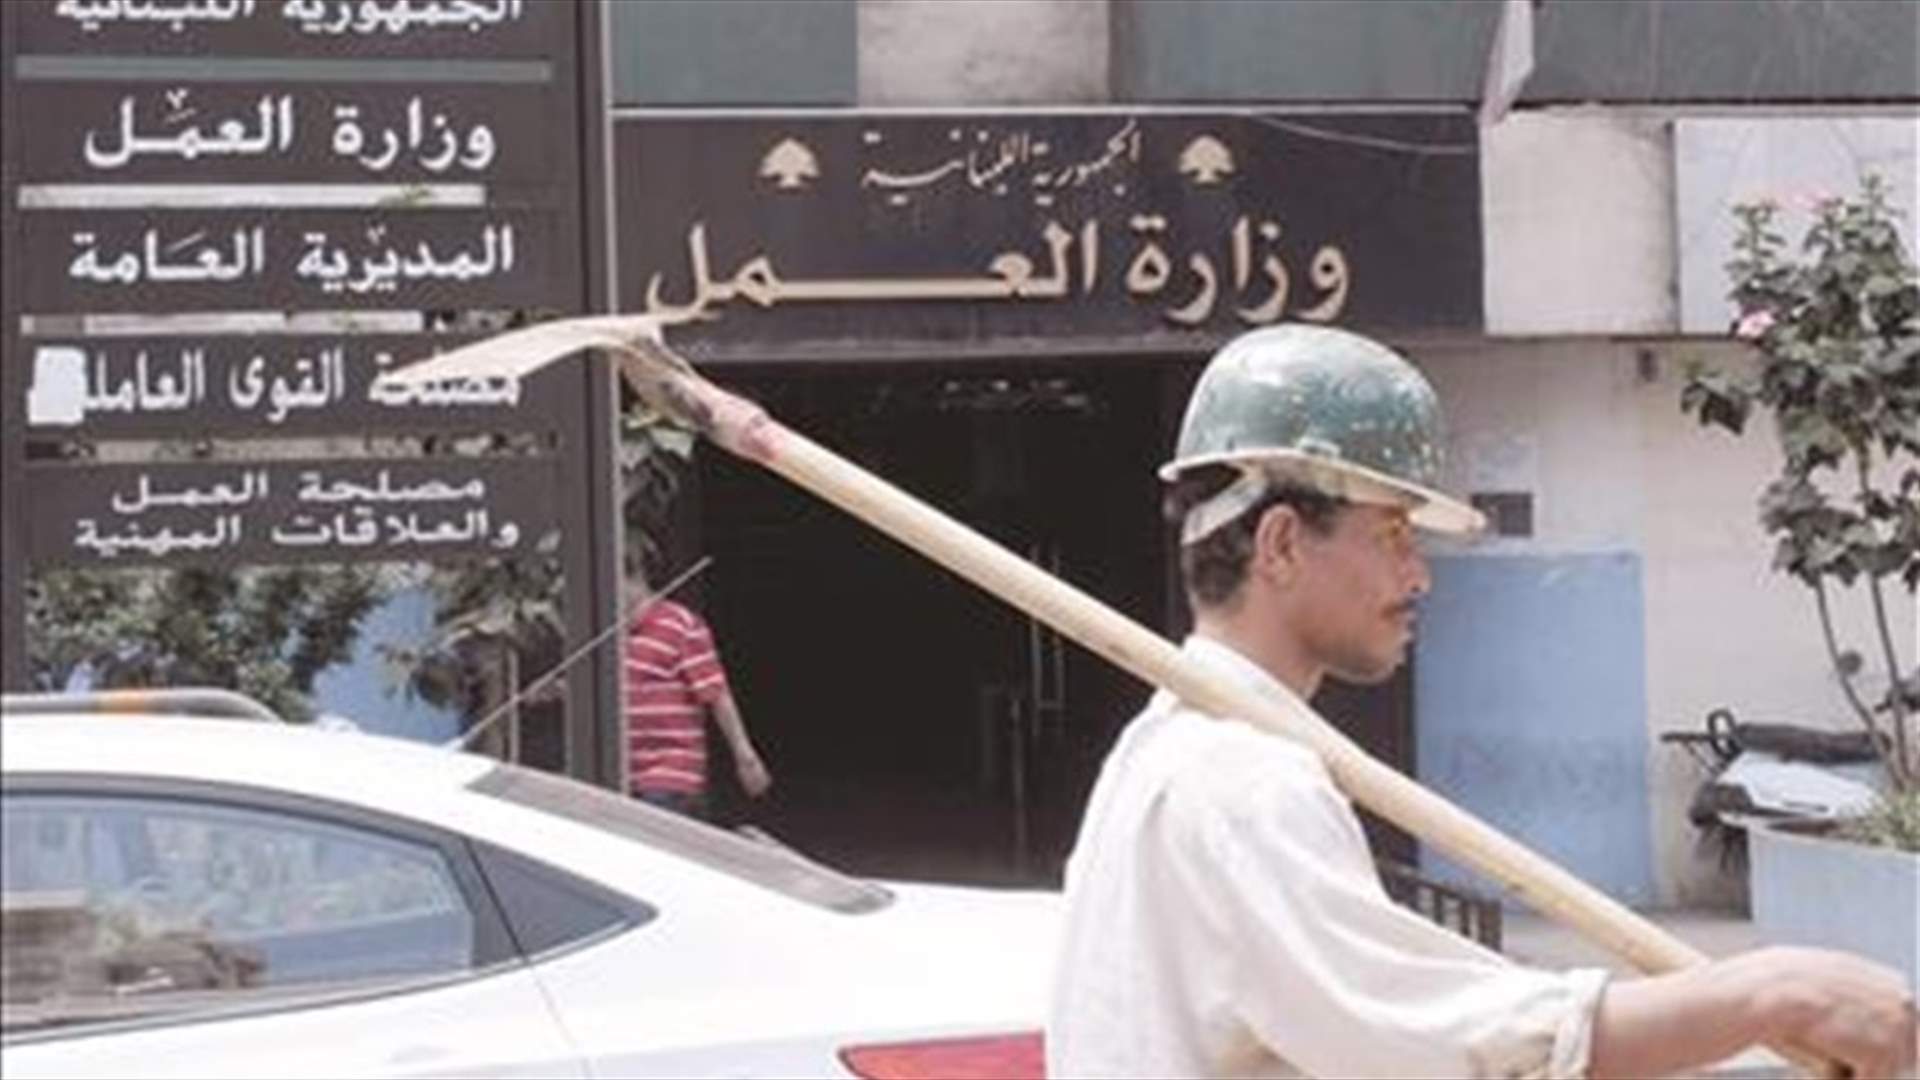 وزارة العمل جددت تحذيرها من الصرف العشوائي لمستخدمين لبنانيين